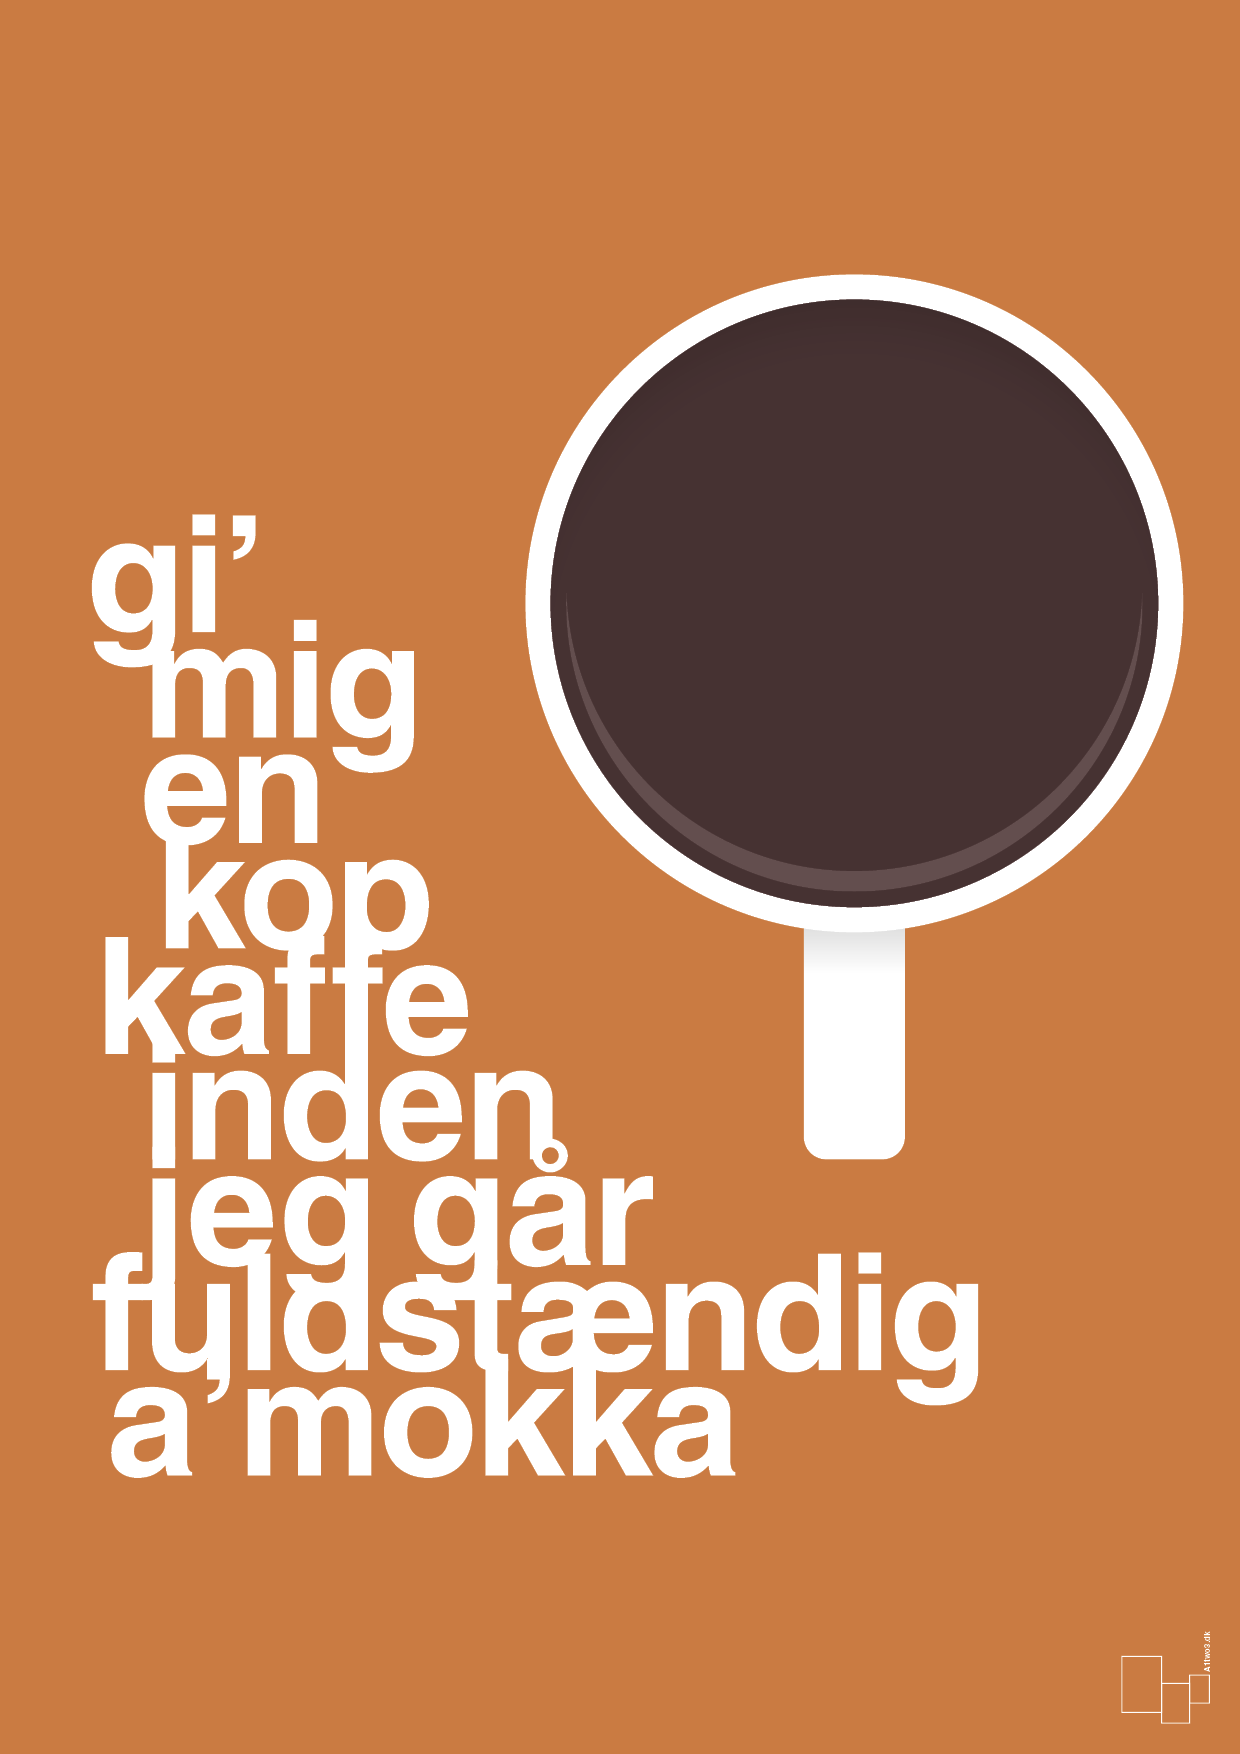 gi mig en kop kaffe inden jeg går fuldstændig amokka - Plakat med Mad & Drikke i Rumba Orange